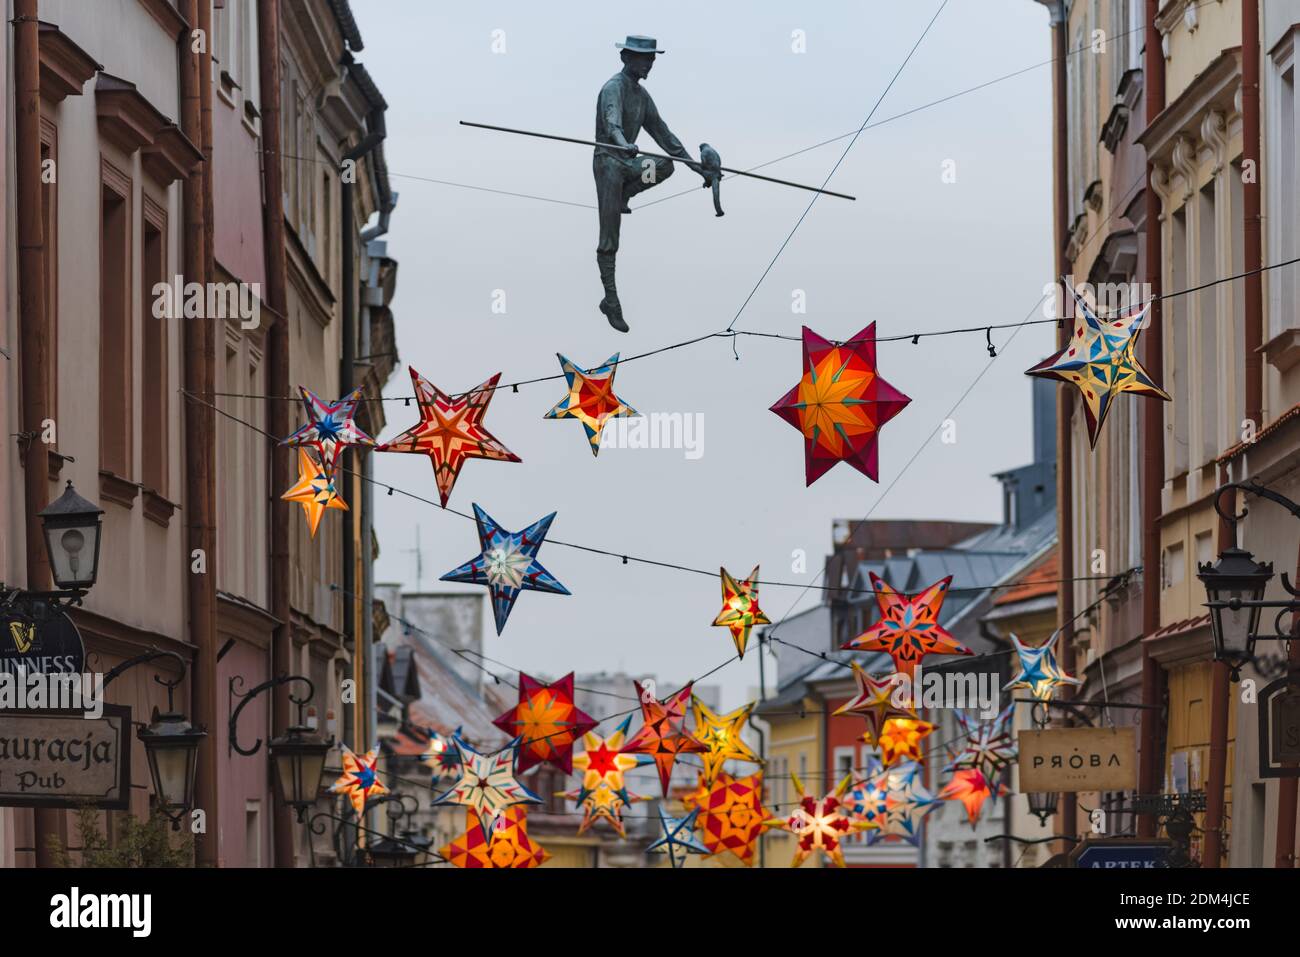 Lublin, Pologne - 29 décembre 2019 : le conjurer et les étoiles colorées illuminées comme décorations de Noël à la rue Grodzka dans la vieille ville Banque D'Images